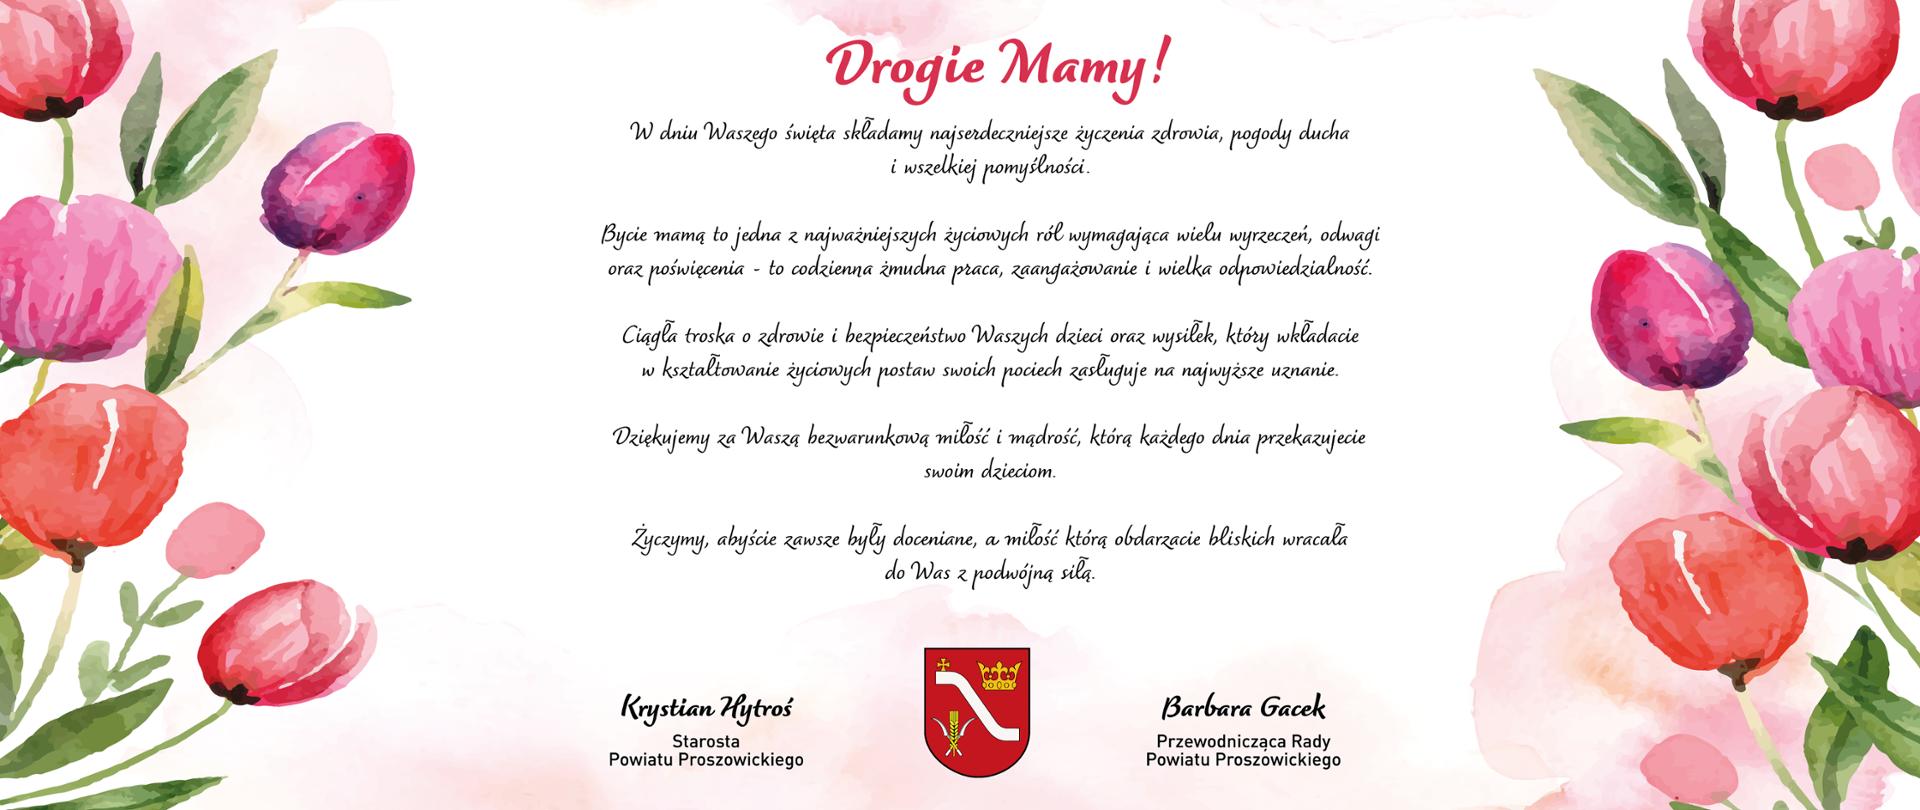 Życzenia z okazji Dnia Matki, pośrodku herb Powiatu Proszowickiego, po lewej i prawej stronie kolorowe kwiaty. 